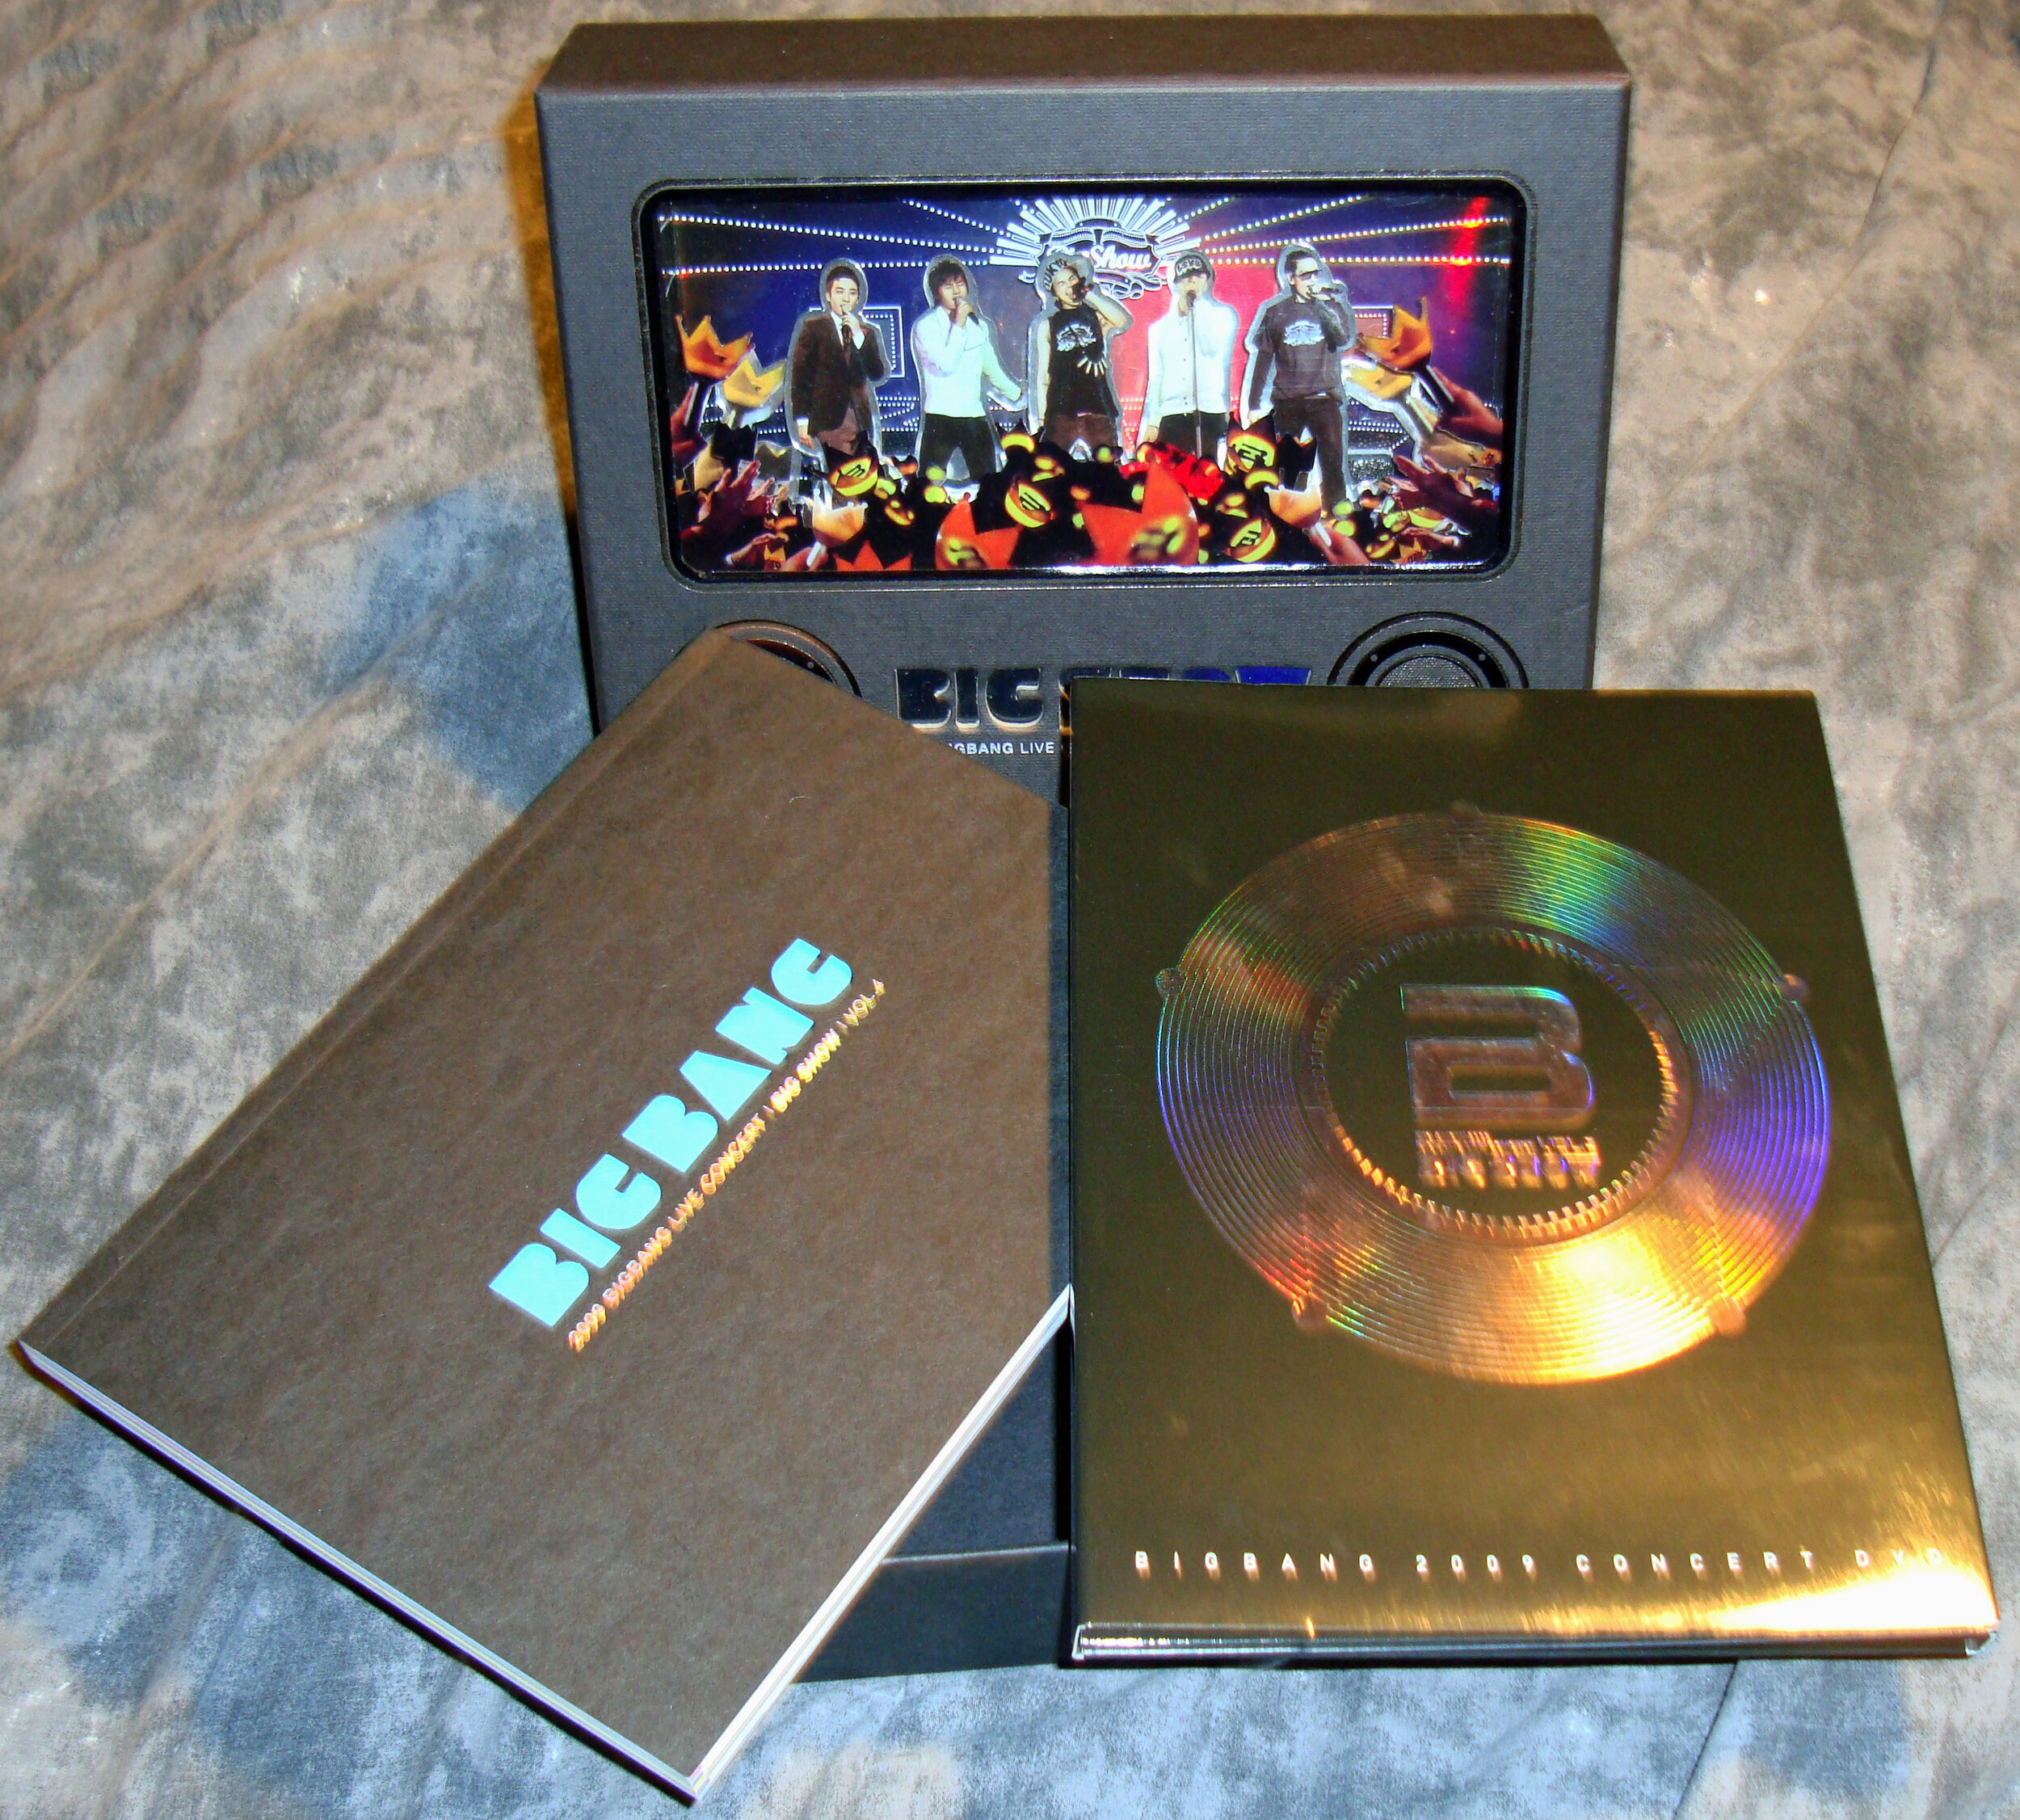 2009 - Big Show 2009 DVD — my BIGBANG collection